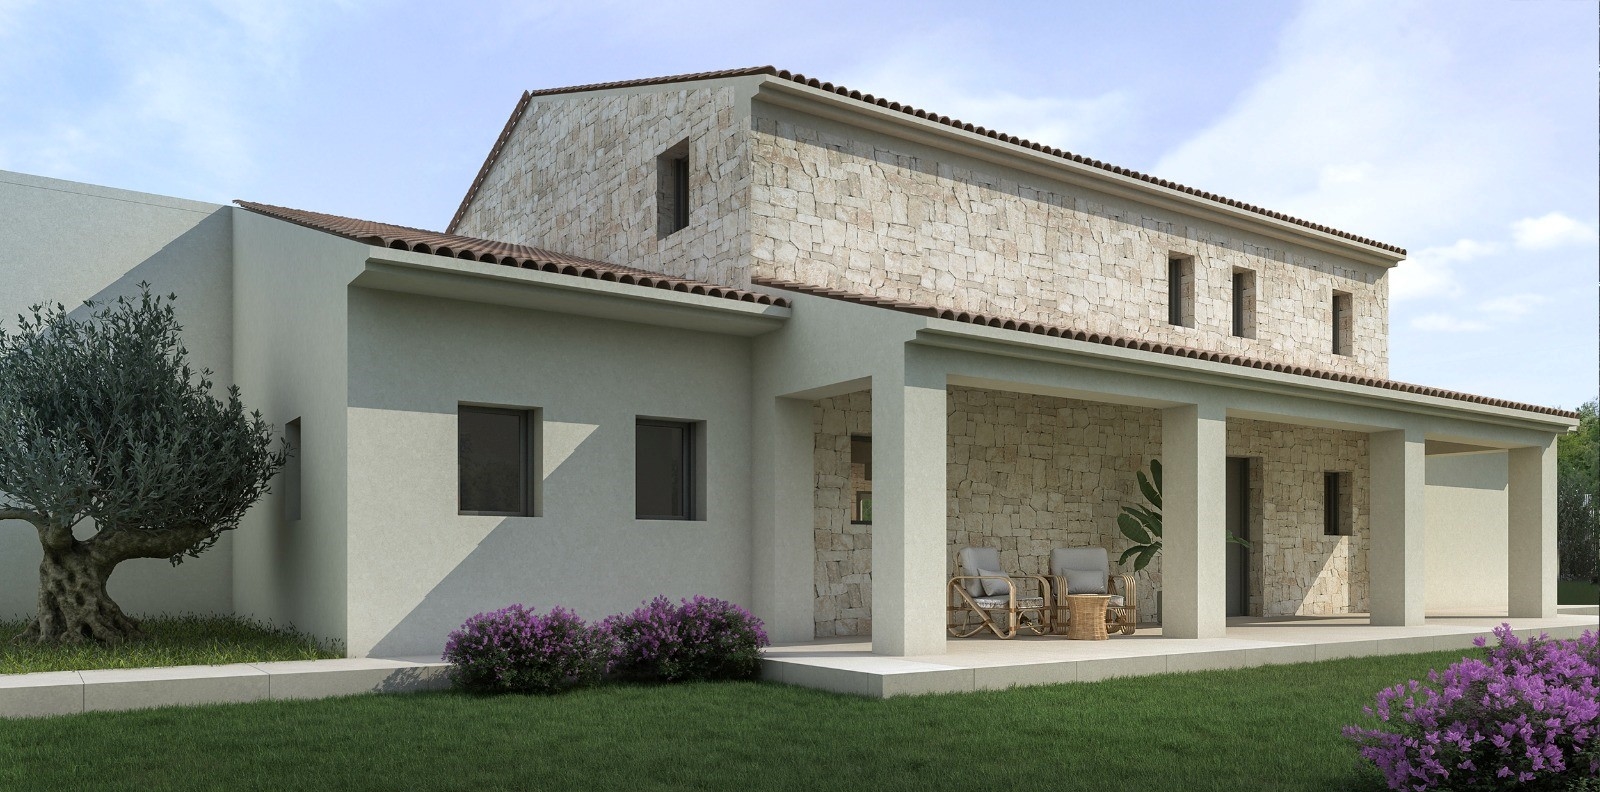 Nieuwbouw villa in mediterrane stijl te koop in Moraira, Costa Blanca